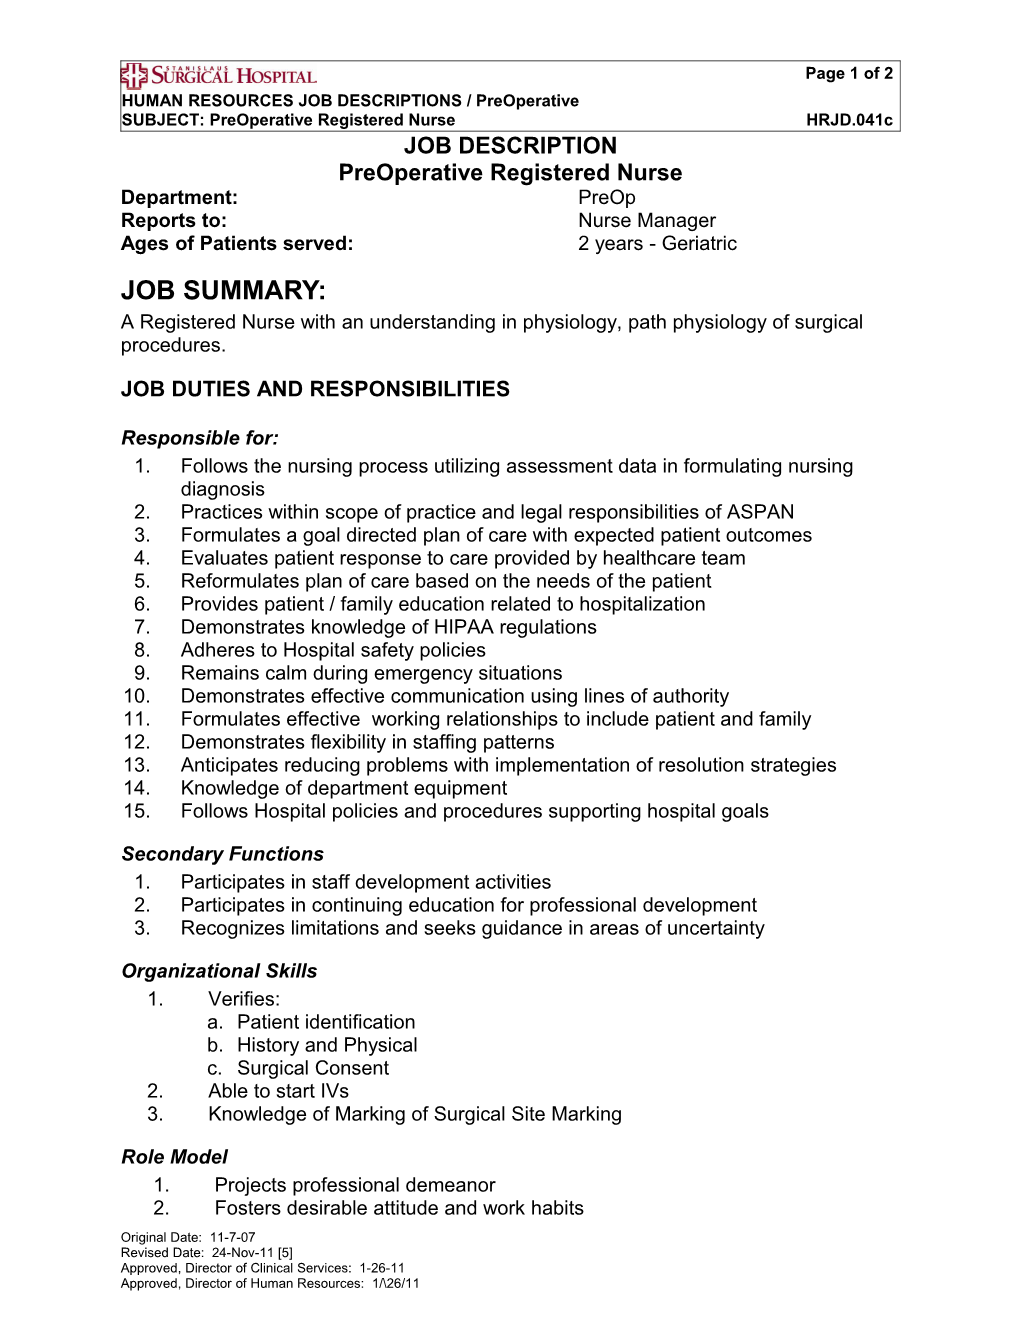 Preoperative Registered Nurse HRJD.041C